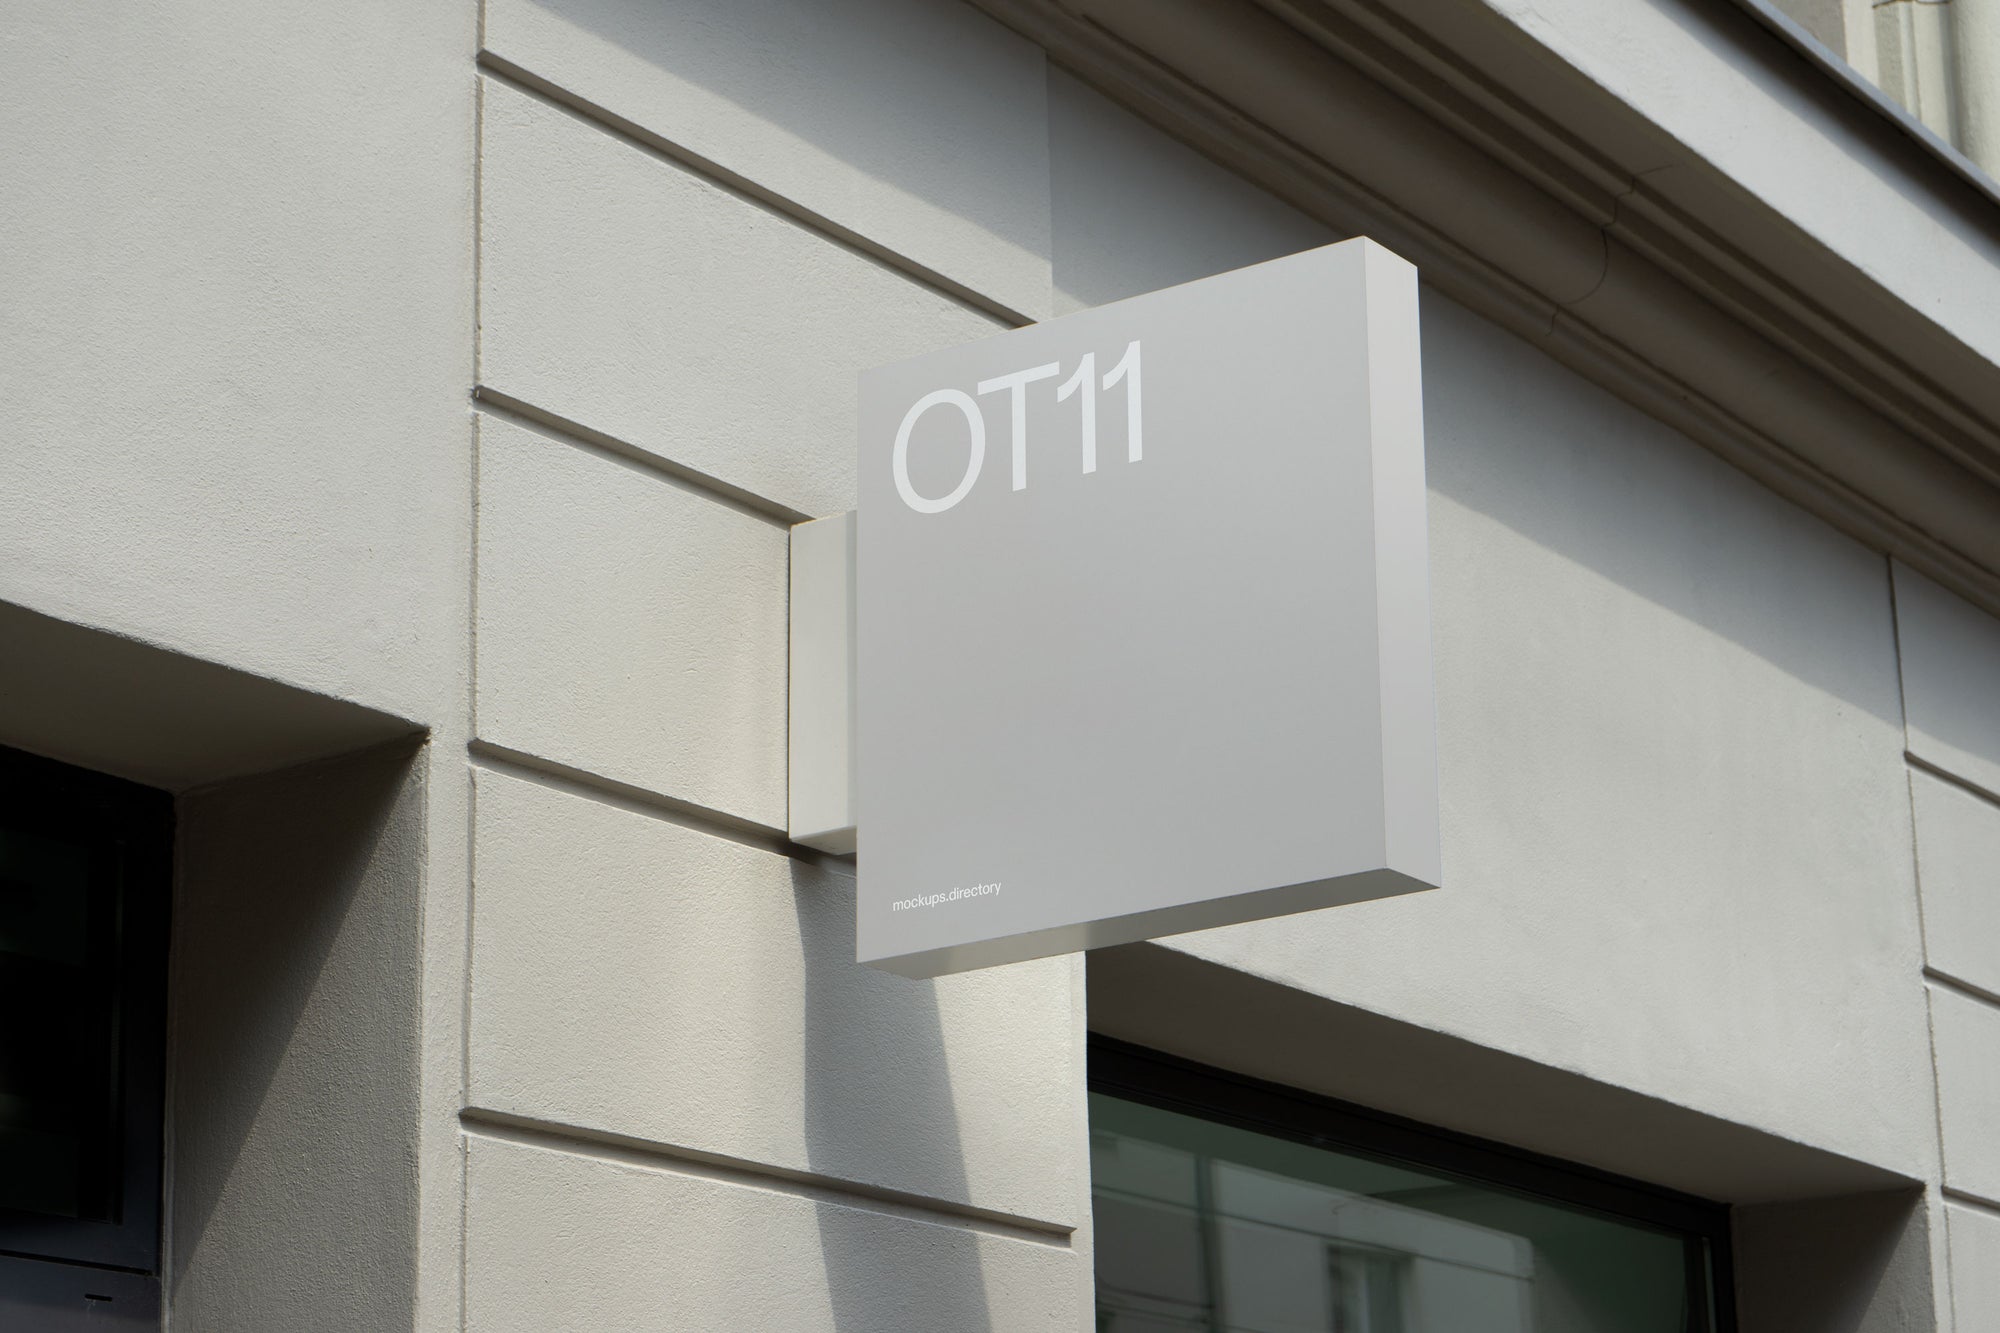 OT11 — Shop Sign